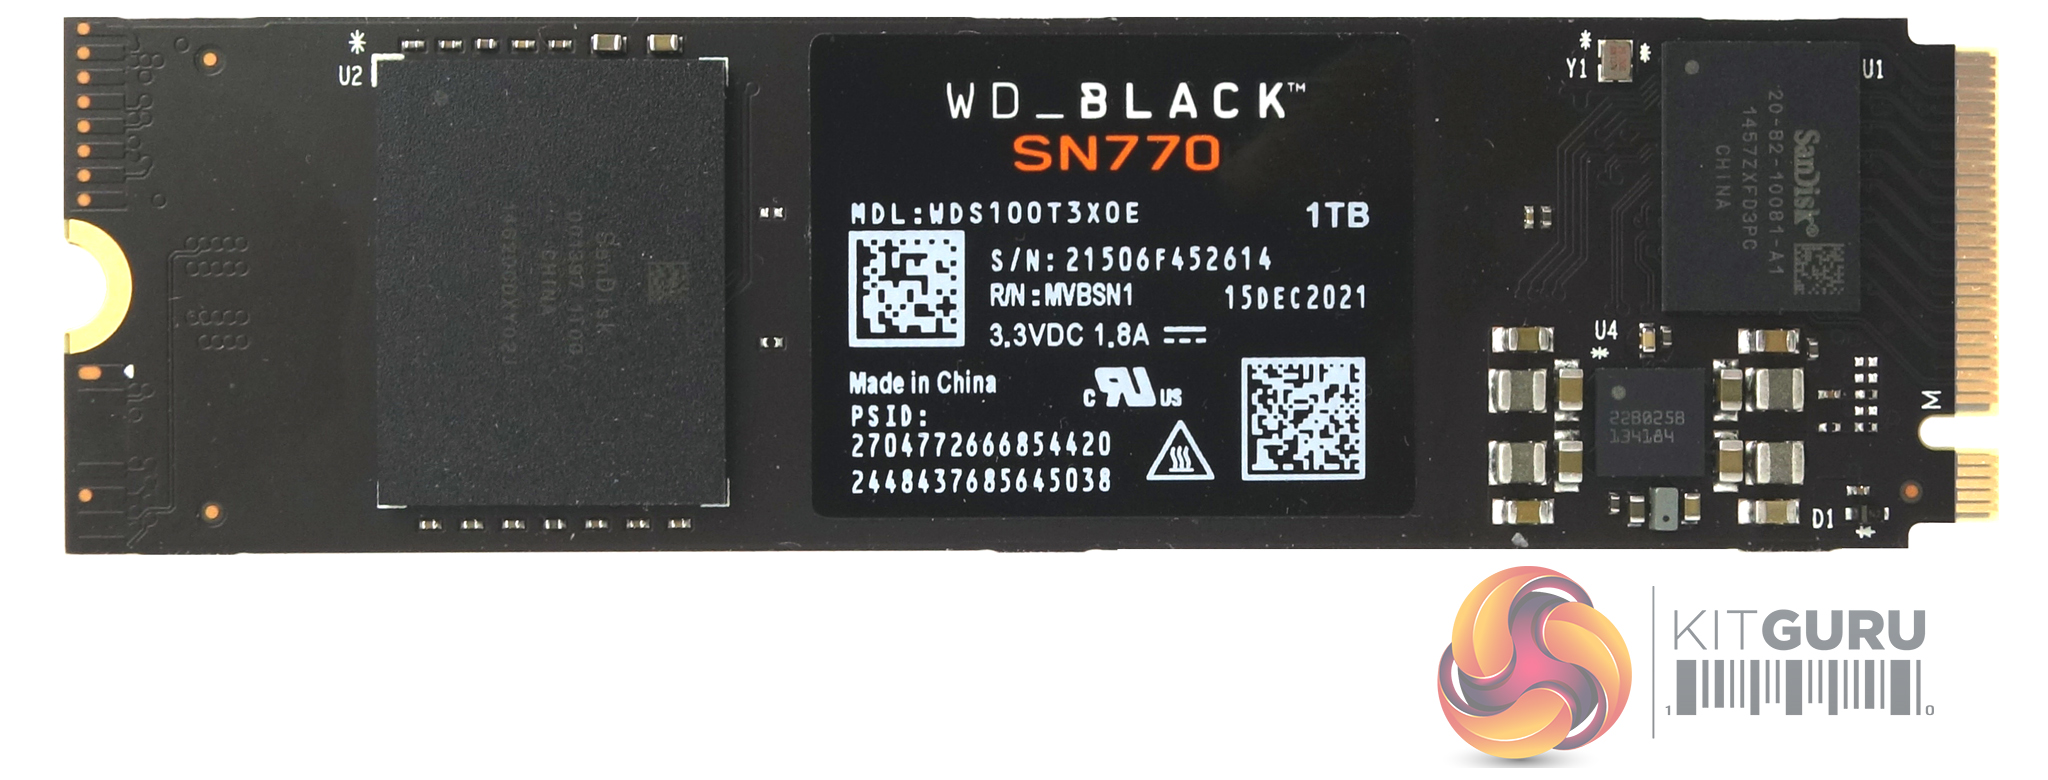 WD Black SN770 1TB SSD 2 Part | KitGuru- Review